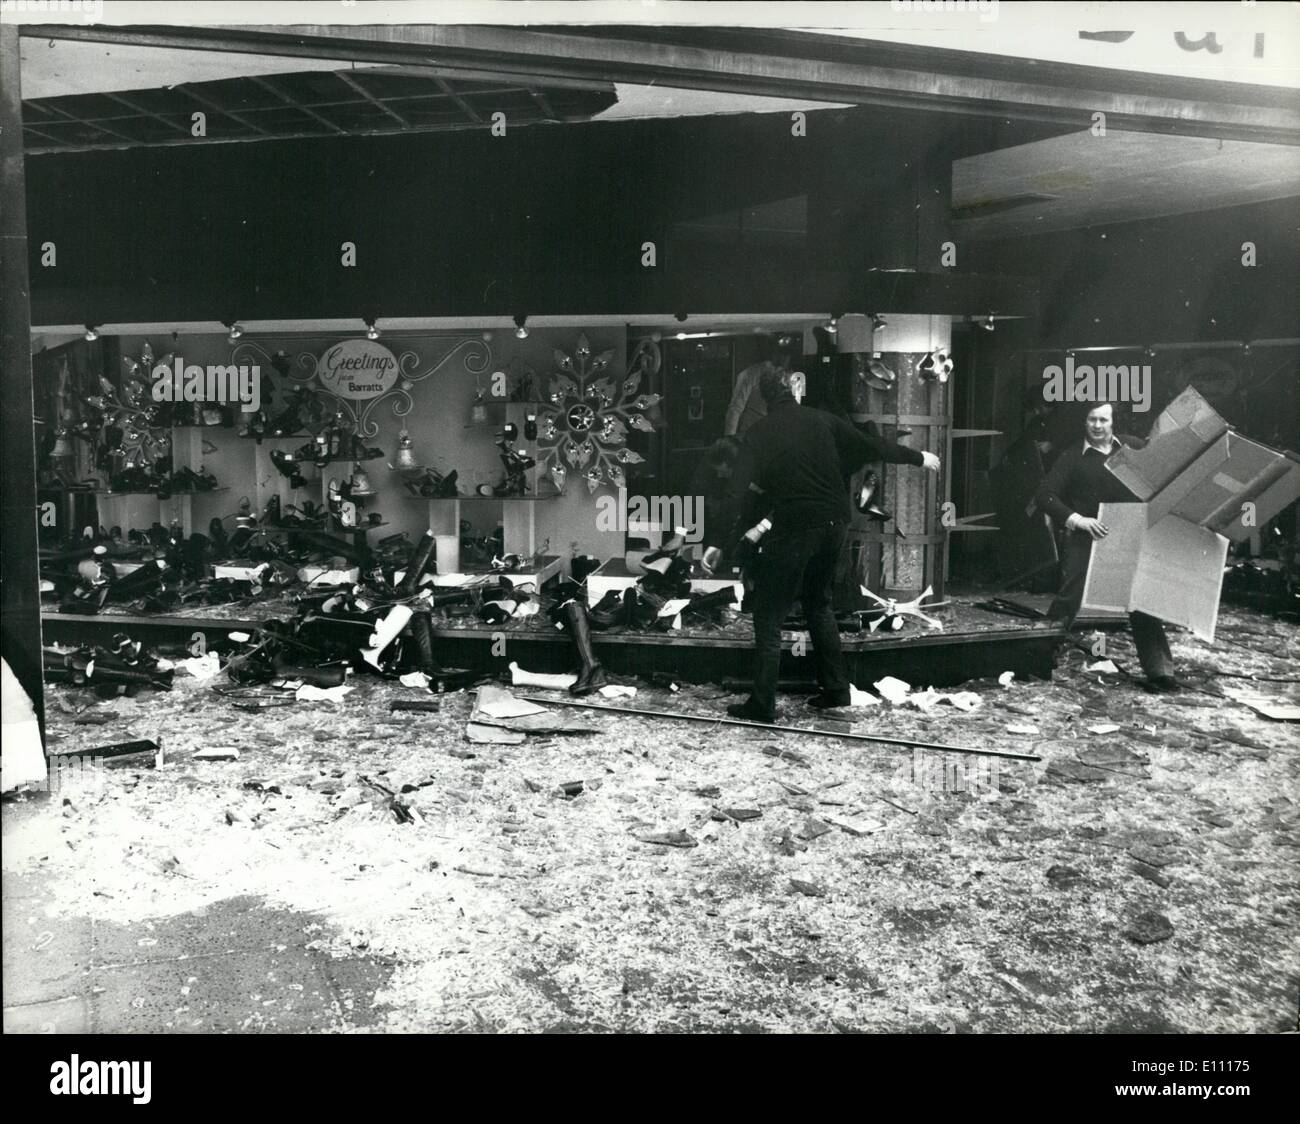 Il 12 Dic. 1974 - Postumi di Oxford street blast.: Molti negozi hanno subito danni sever in ultima notte di auto-bomba esplosione in Oxford Street. Londra. Mostra fotografica di visualizzare questa mattina che mostra i gravi danni causati alla Barratts negozio di calzature in ultima notte di esplosione. Foto Stock